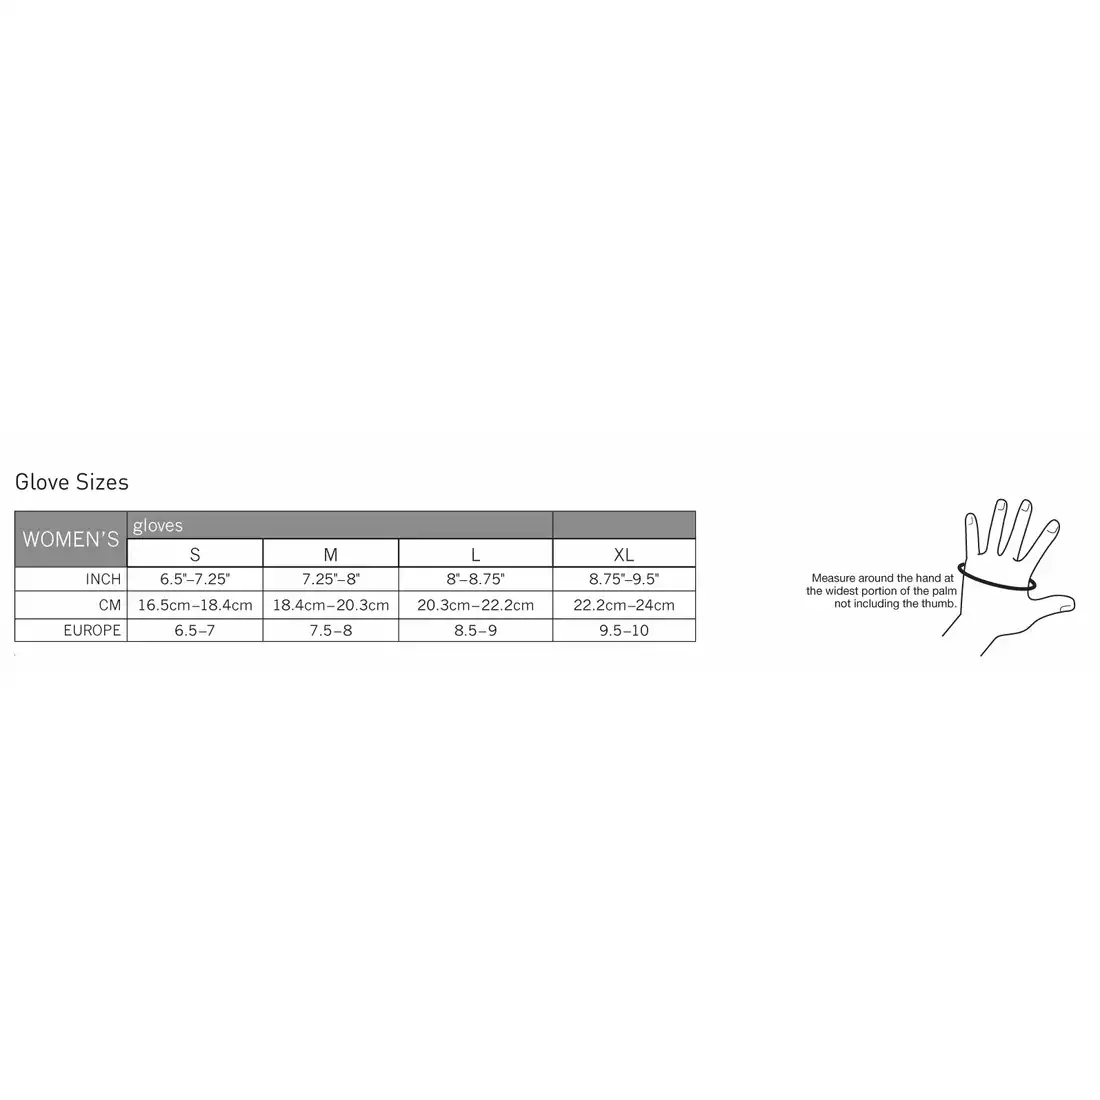 PEARL IZUMI W's Select Softshell 14241405-428 - damskie zimowe rękawiczki sportowe